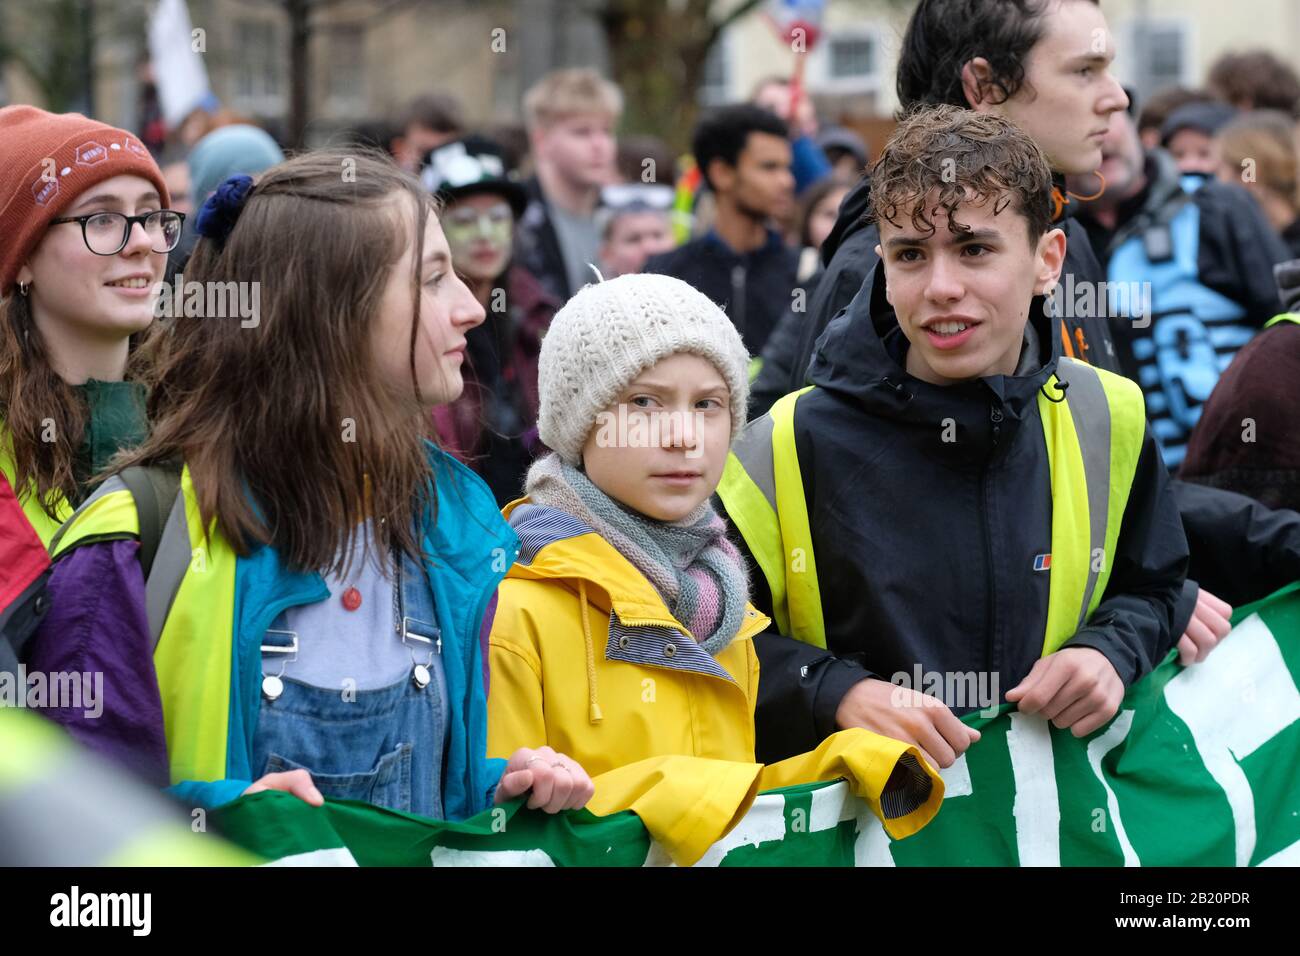 Bristol, Royaume-Uni - vendredi 28 février 2020 - Greta Thunberg, militante du climat, dirige la Marche du climat de Bristol Youth Strike 4 à travers Bristol sous la pluie. Photo Steven May / Alay Live News Banque D'Images